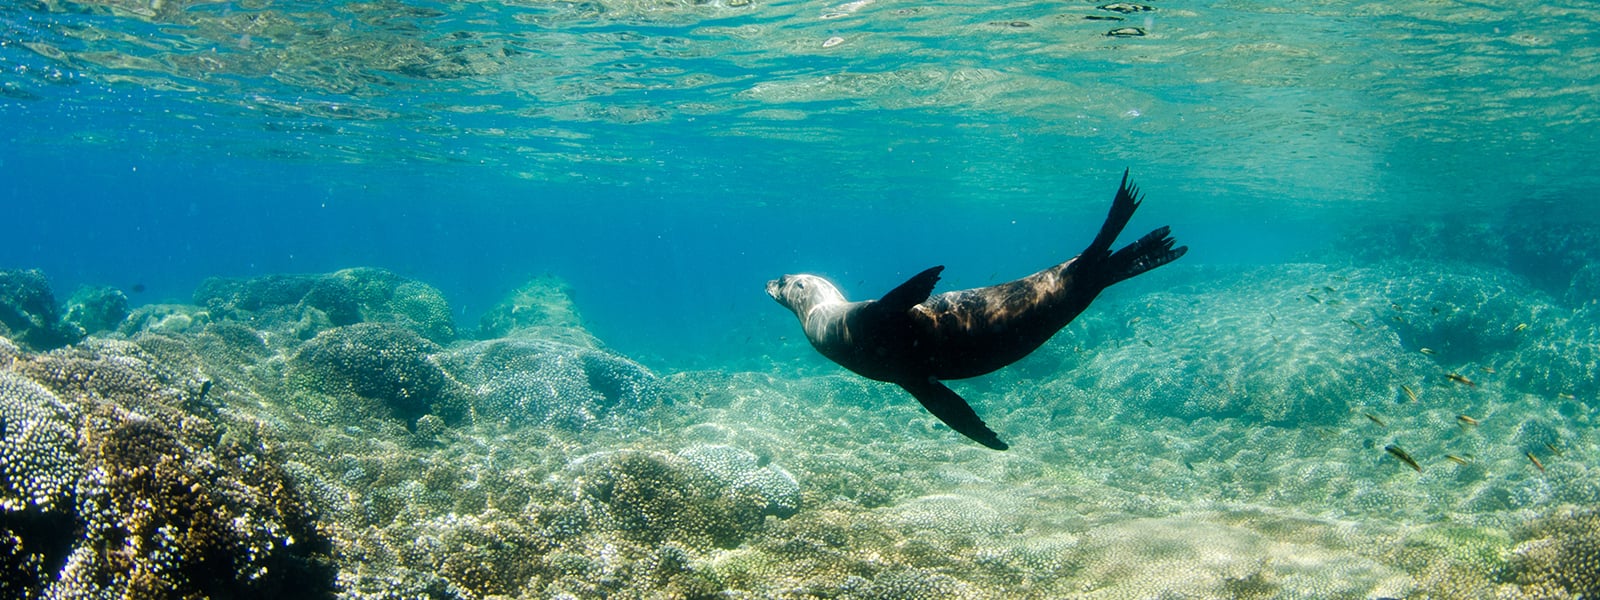 sea lion underwater at